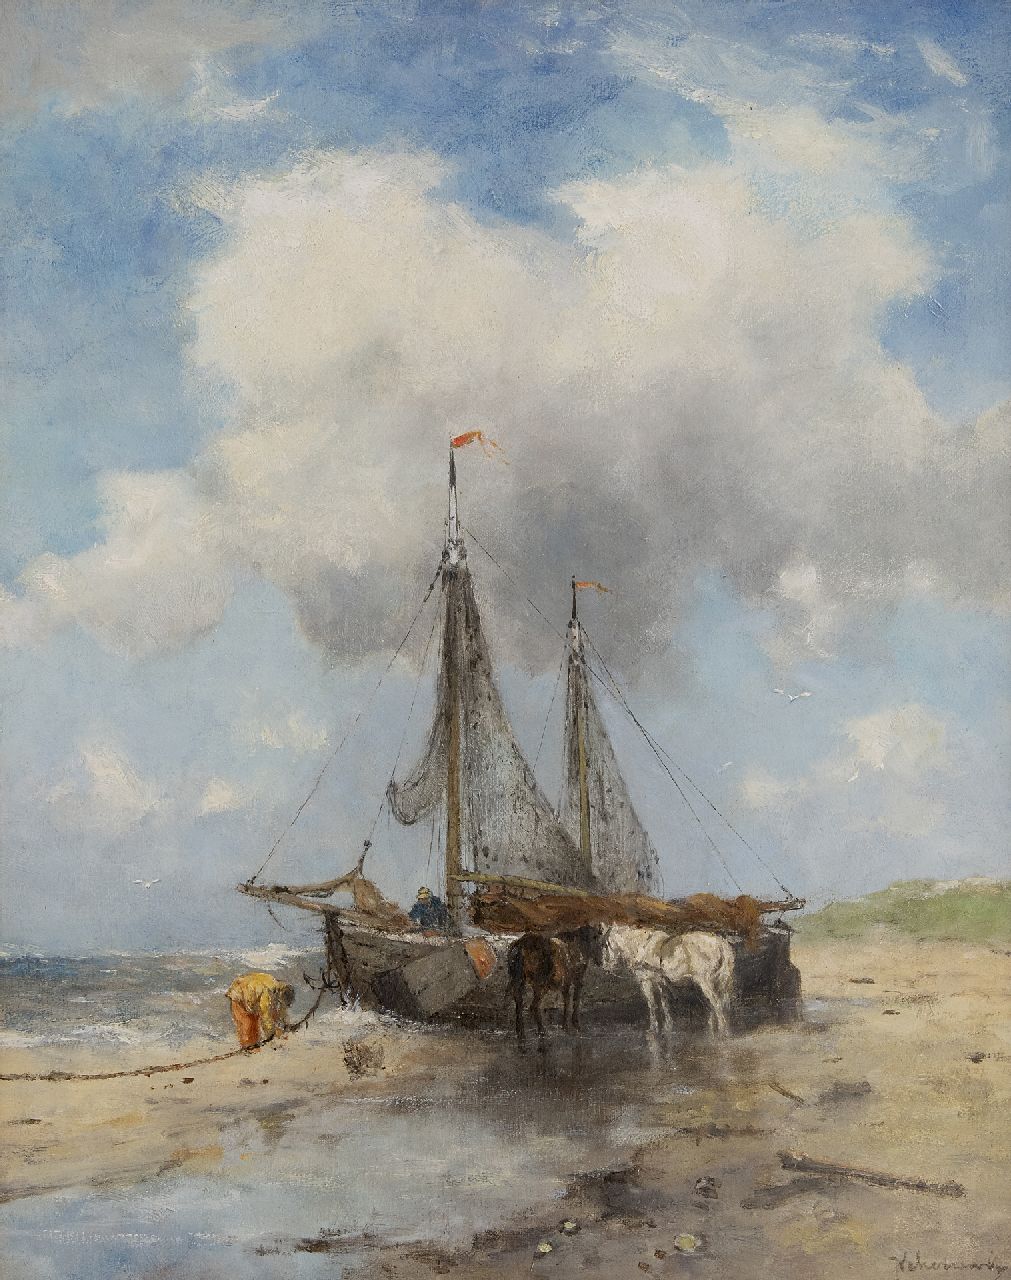 Scherrewitz J.F.C.  | Johan Frederik Cornelis Scherrewitz | Schilderijen te koop aangeboden | Bomschuiten op het strand, olieverf op doek 50,5 x 40,5 cm, gesigneerd rechtsonder